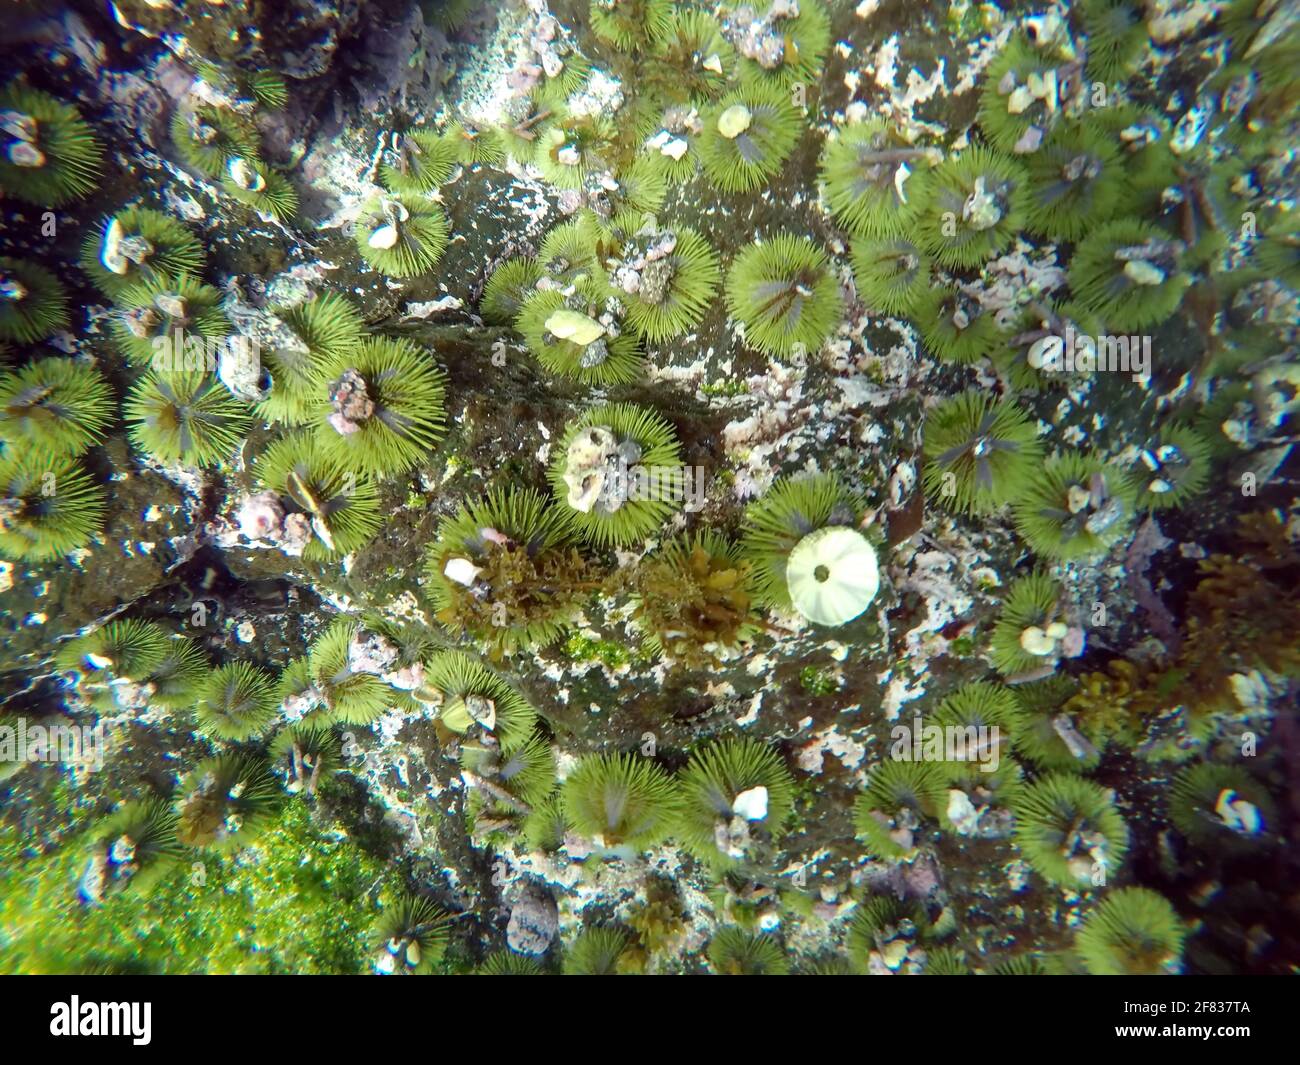 Green sea urchin with shells stuck to it at Punta Espinoza, Fernandina Island, Galapagos, Ecuador Stock Photo